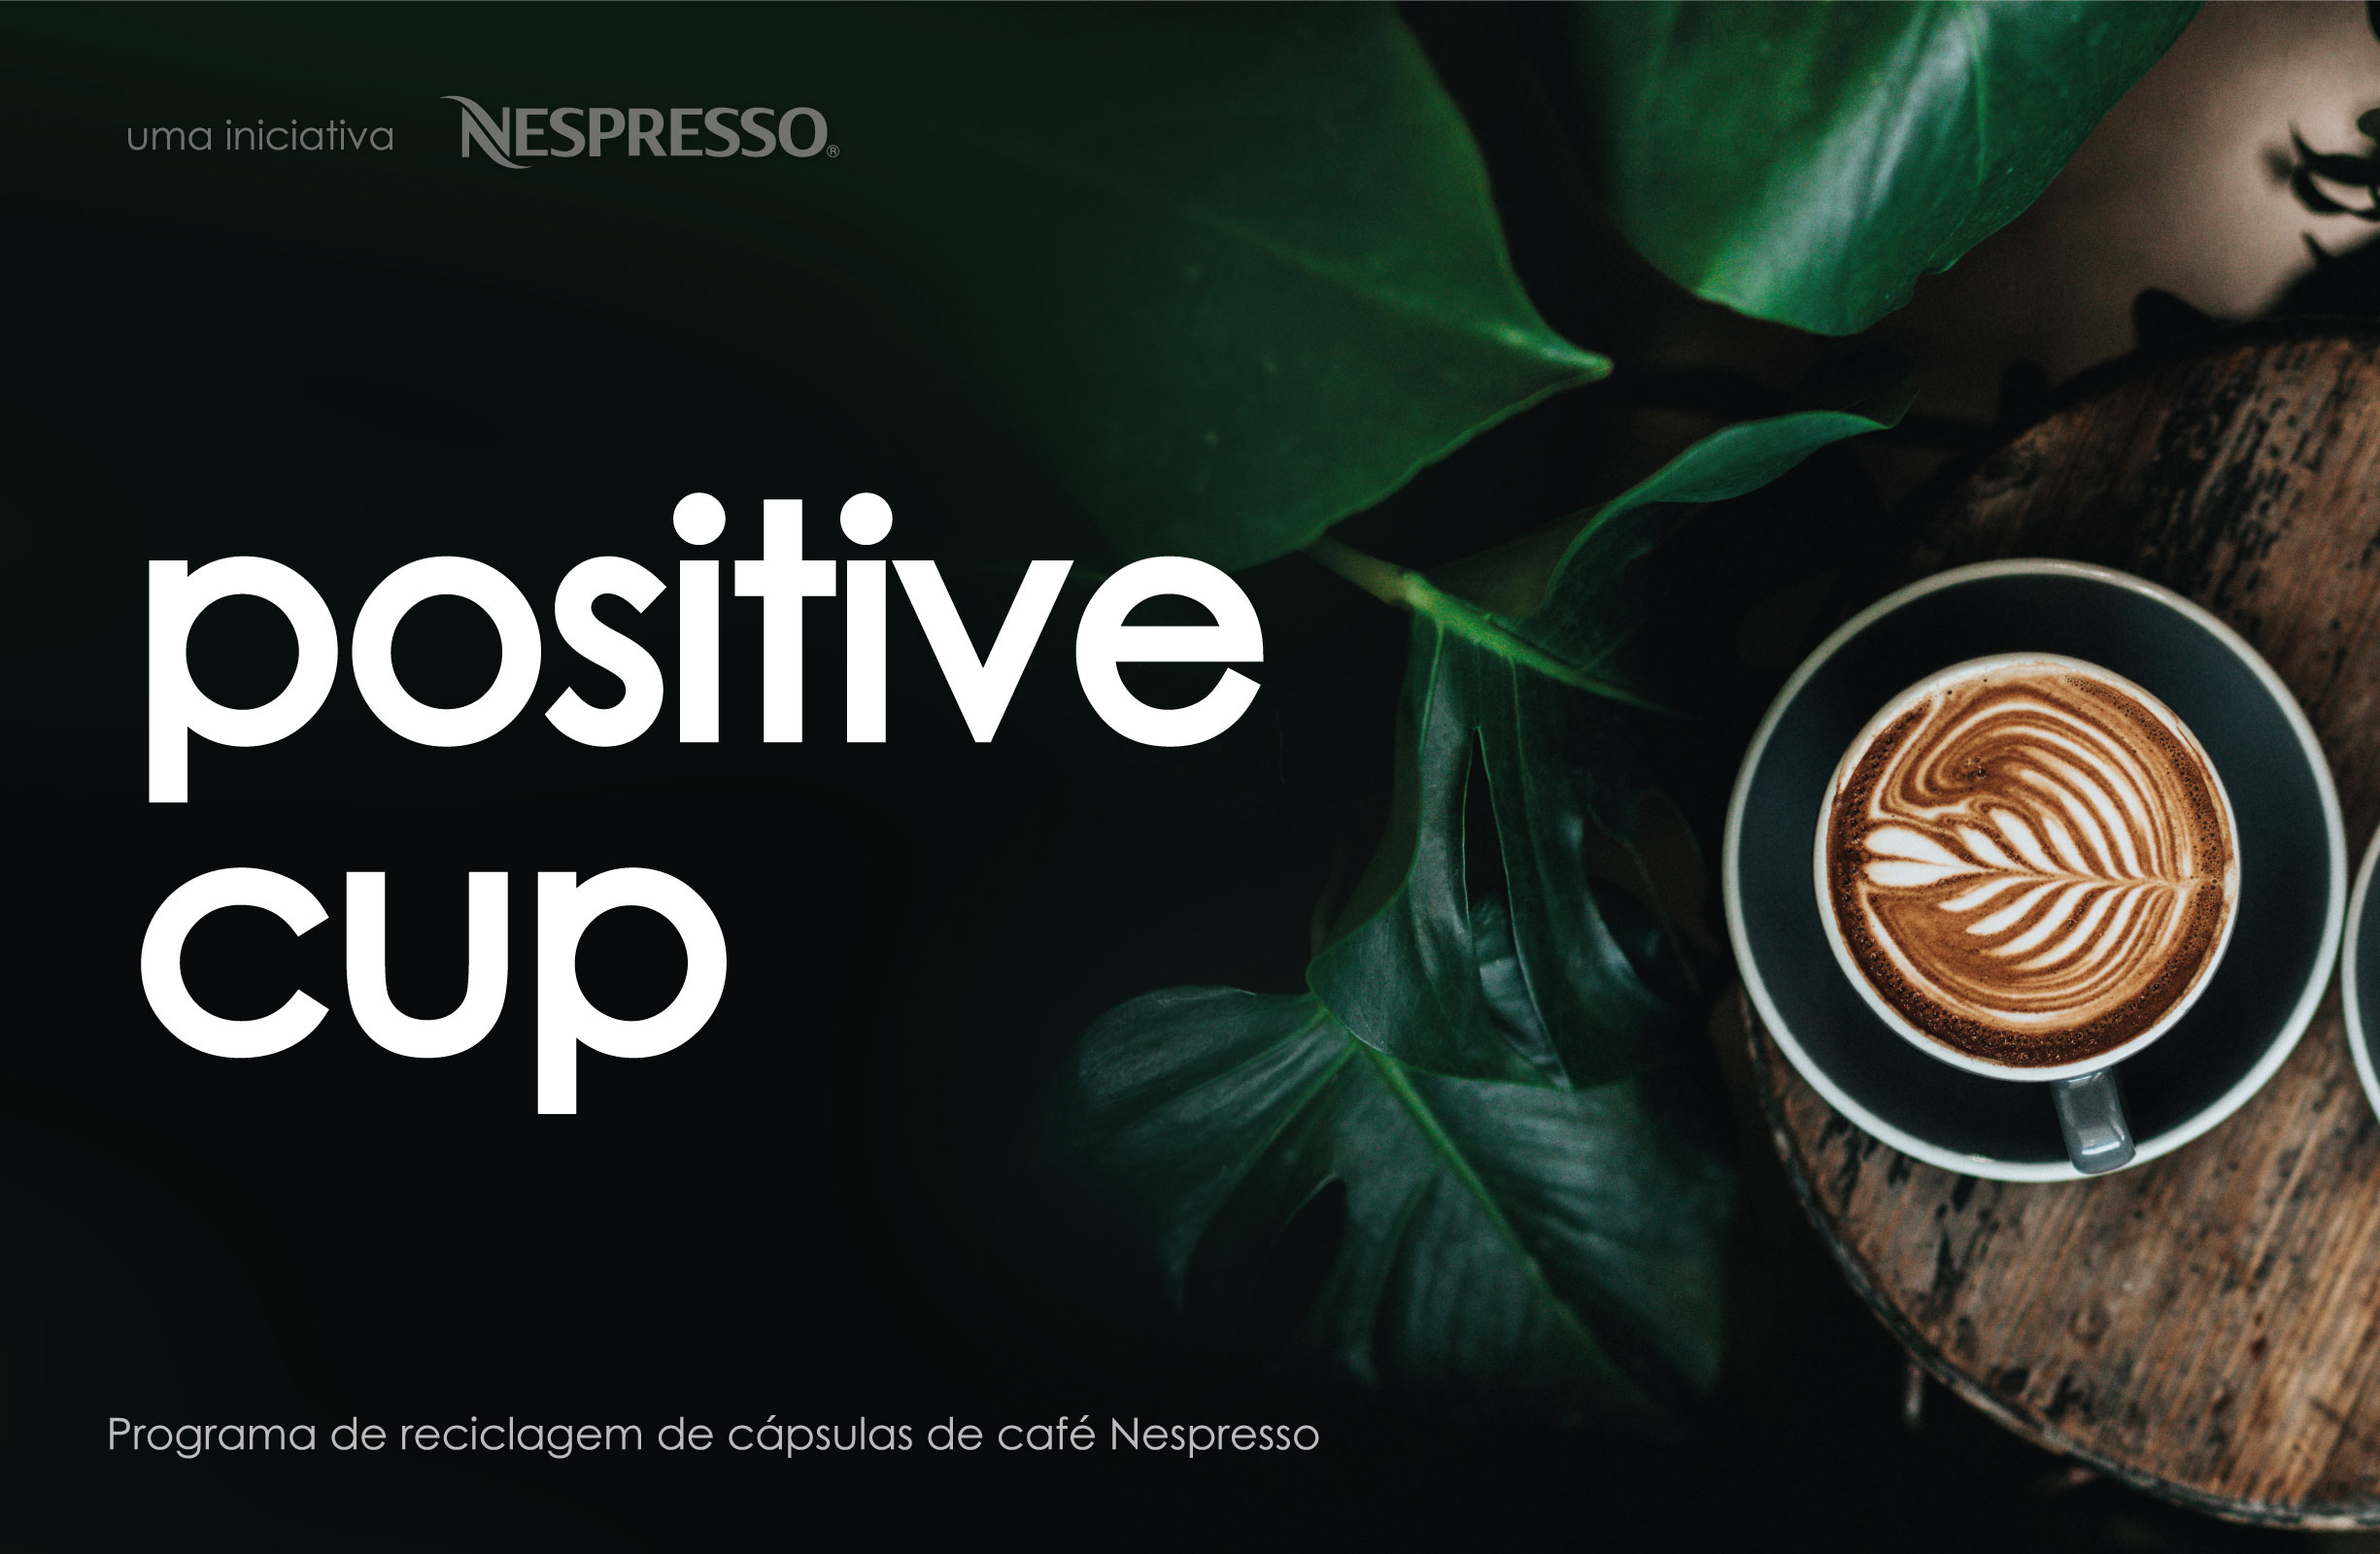 “The Positive Cup” com Nespresso®